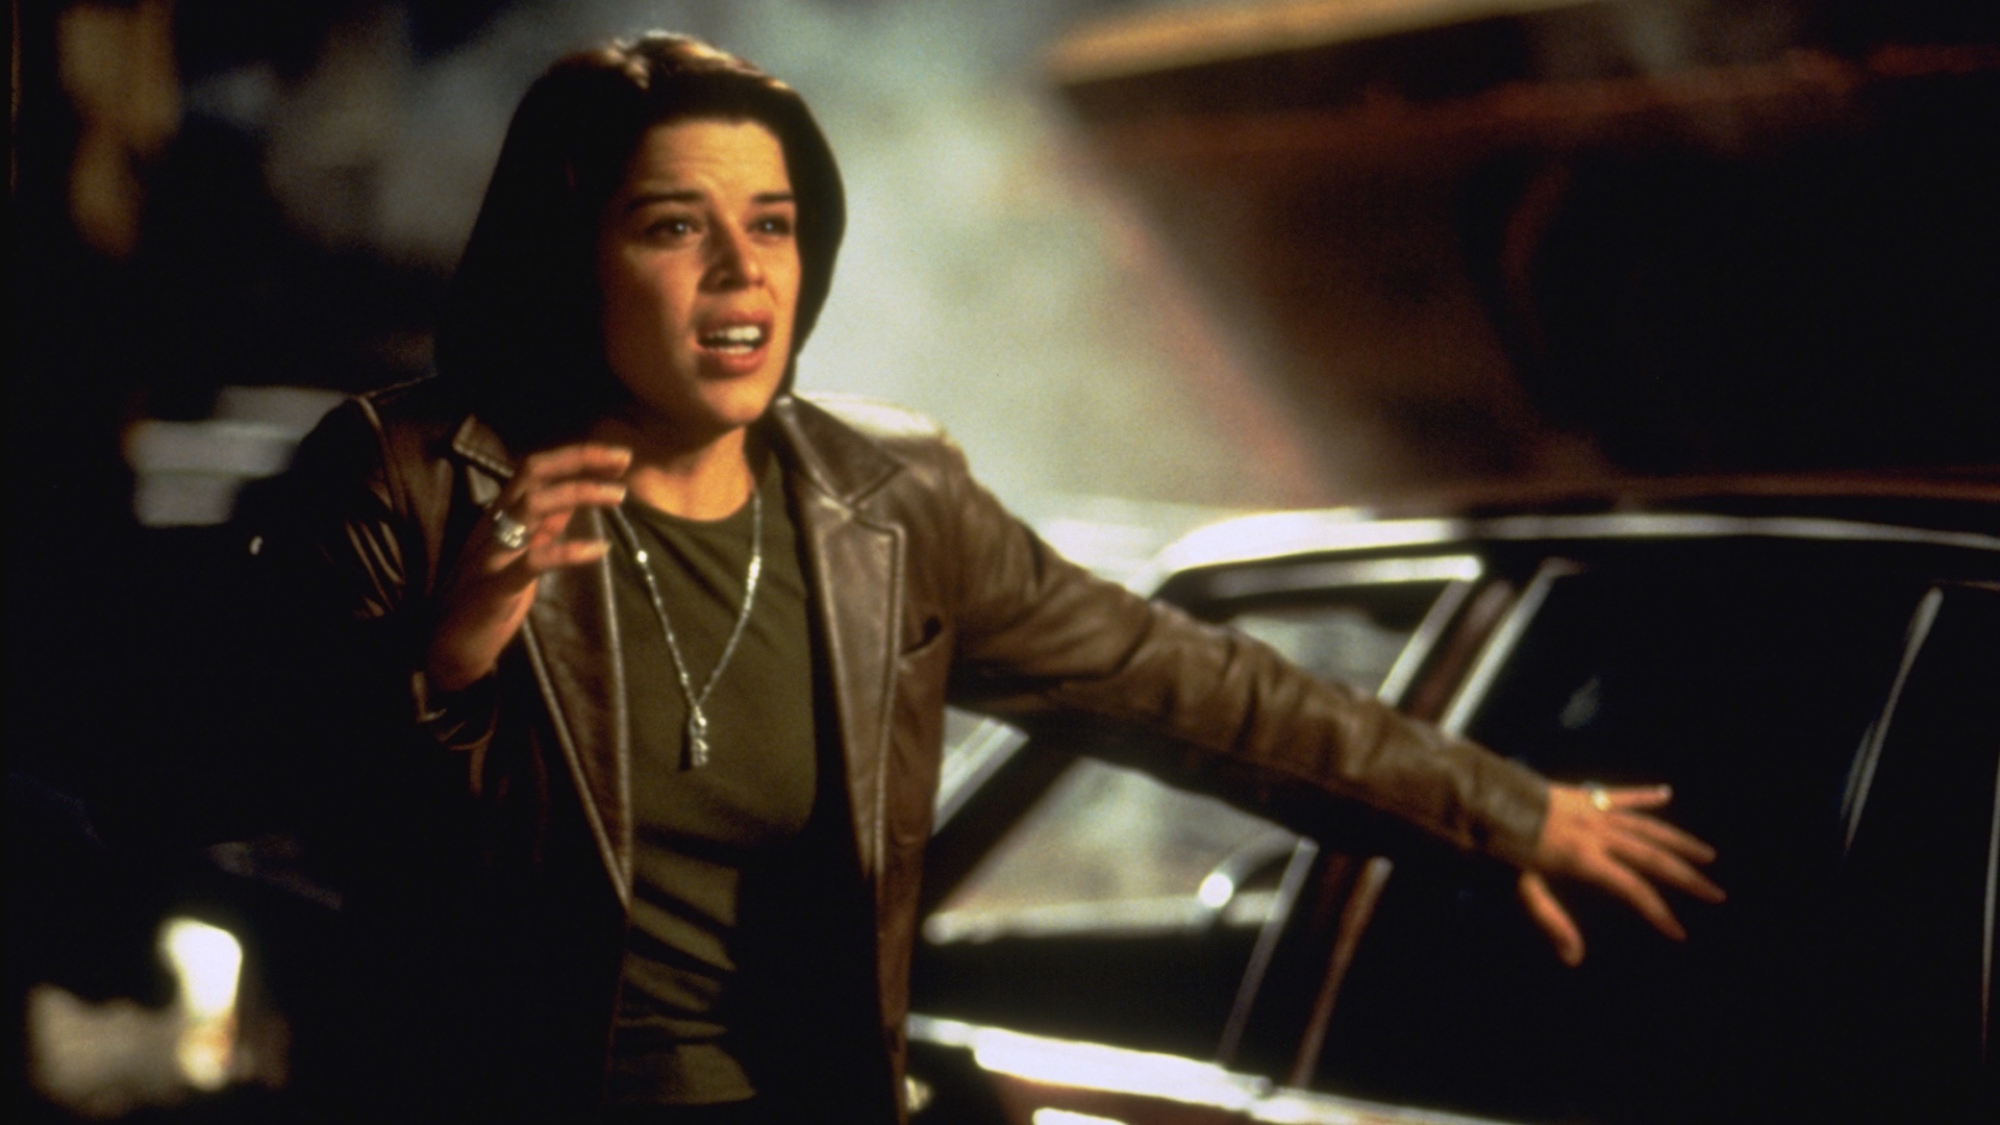 Une femme brune se tient près d'une voiture, tenant une main près de son visage, qui a l'air effrayé.